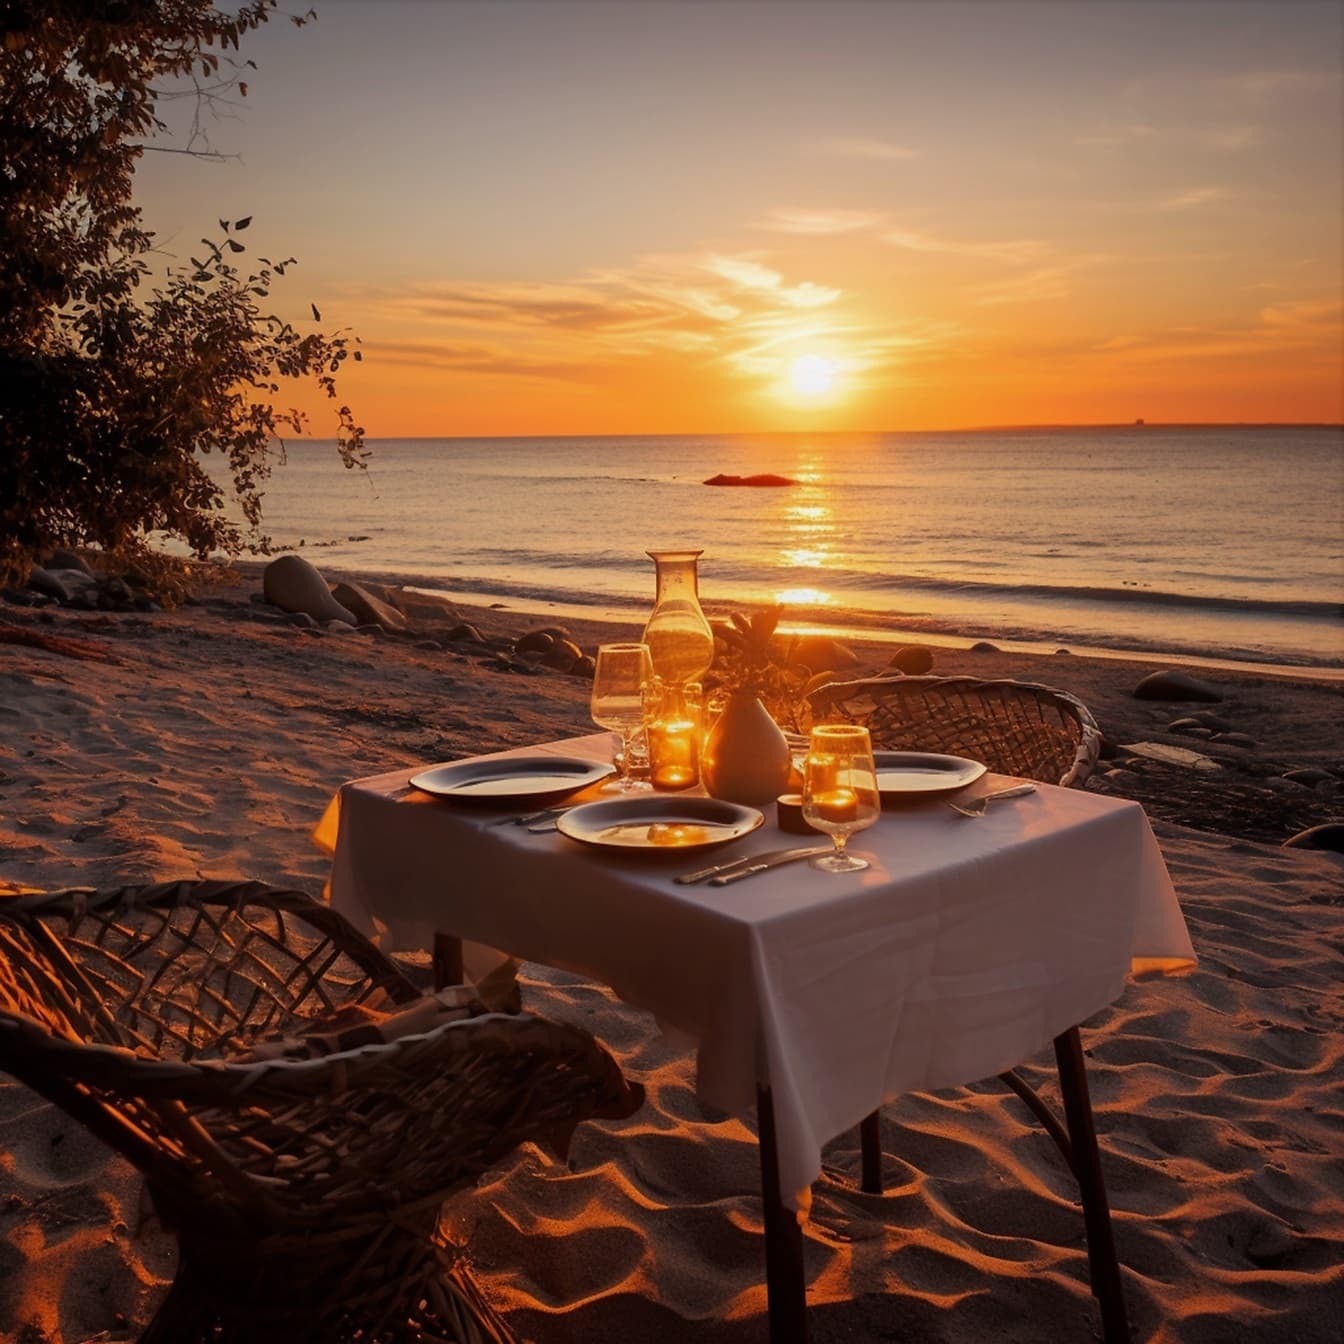 Romantische eettafel bij mooi strand in zonsondergang